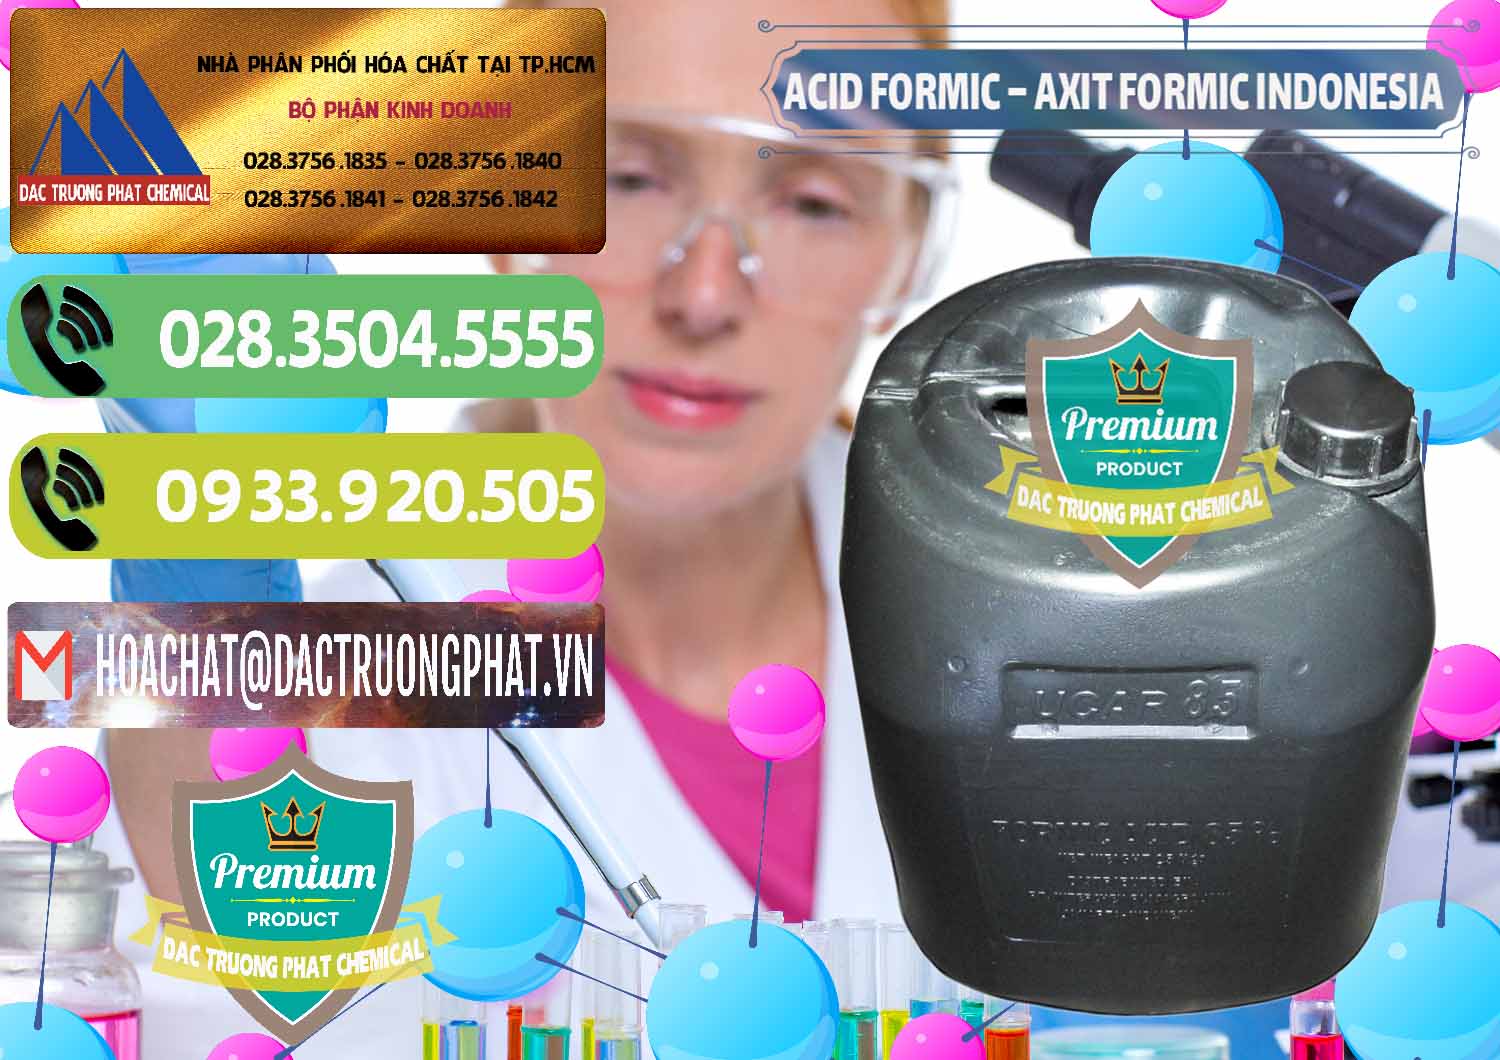 Nơi chuyên bán - cung cấp Acid Formic - Axit Formic Indonesia - 0026 - Nhà phân phối & cung ứng hóa chất tại TP.HCM - hoachatmientay.vn